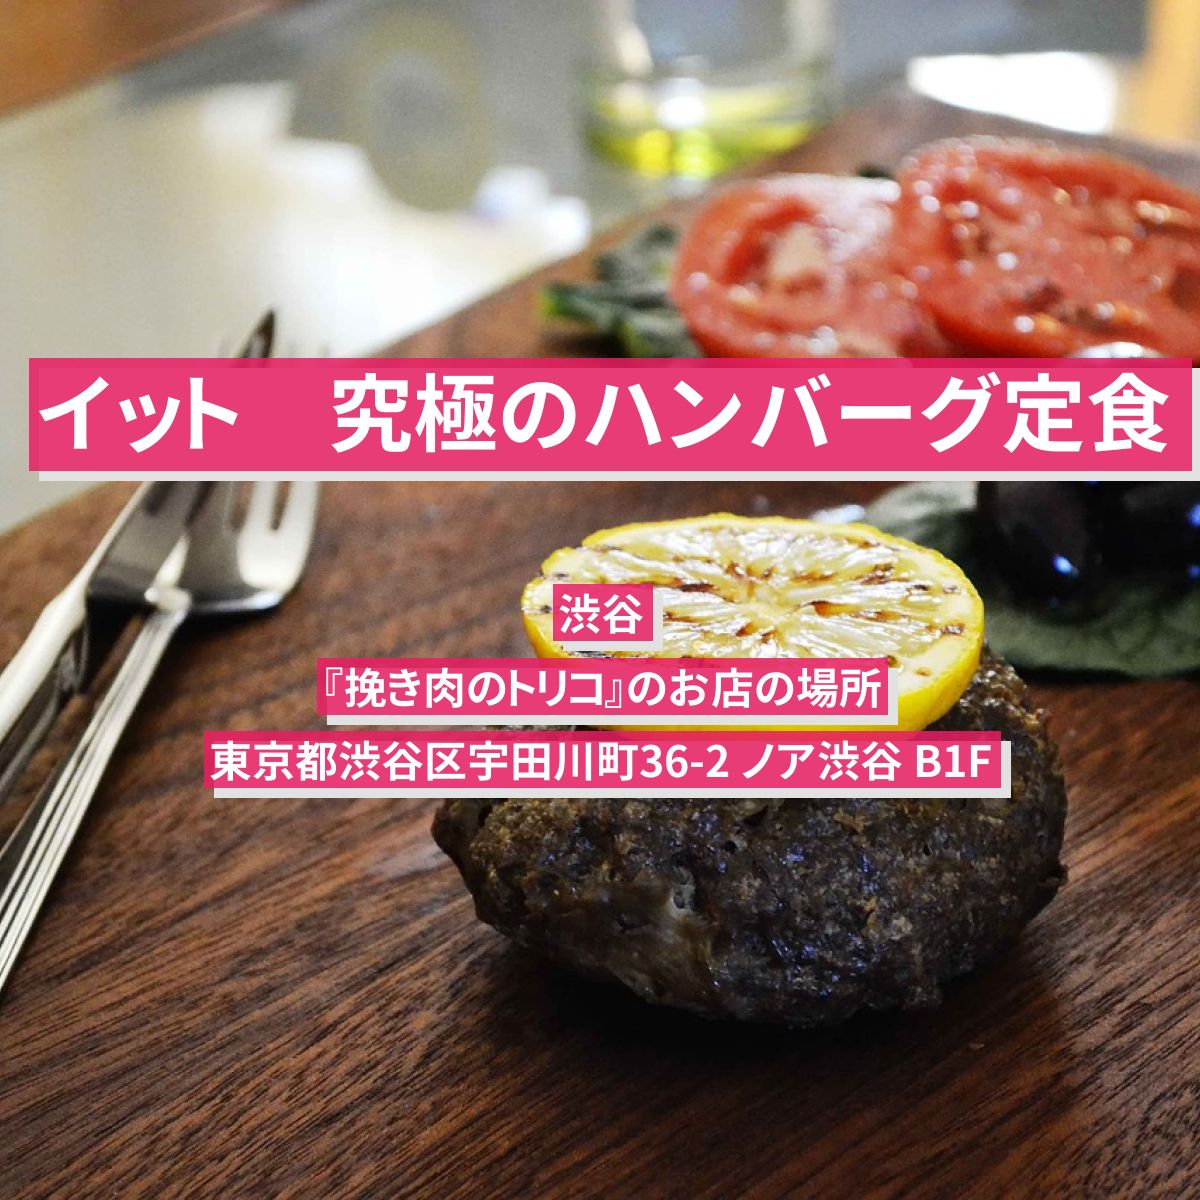 【イット】究極のハンバーグ定食（名古屋発祥）渋谷『挽き肉のトリコ』のお店の場所